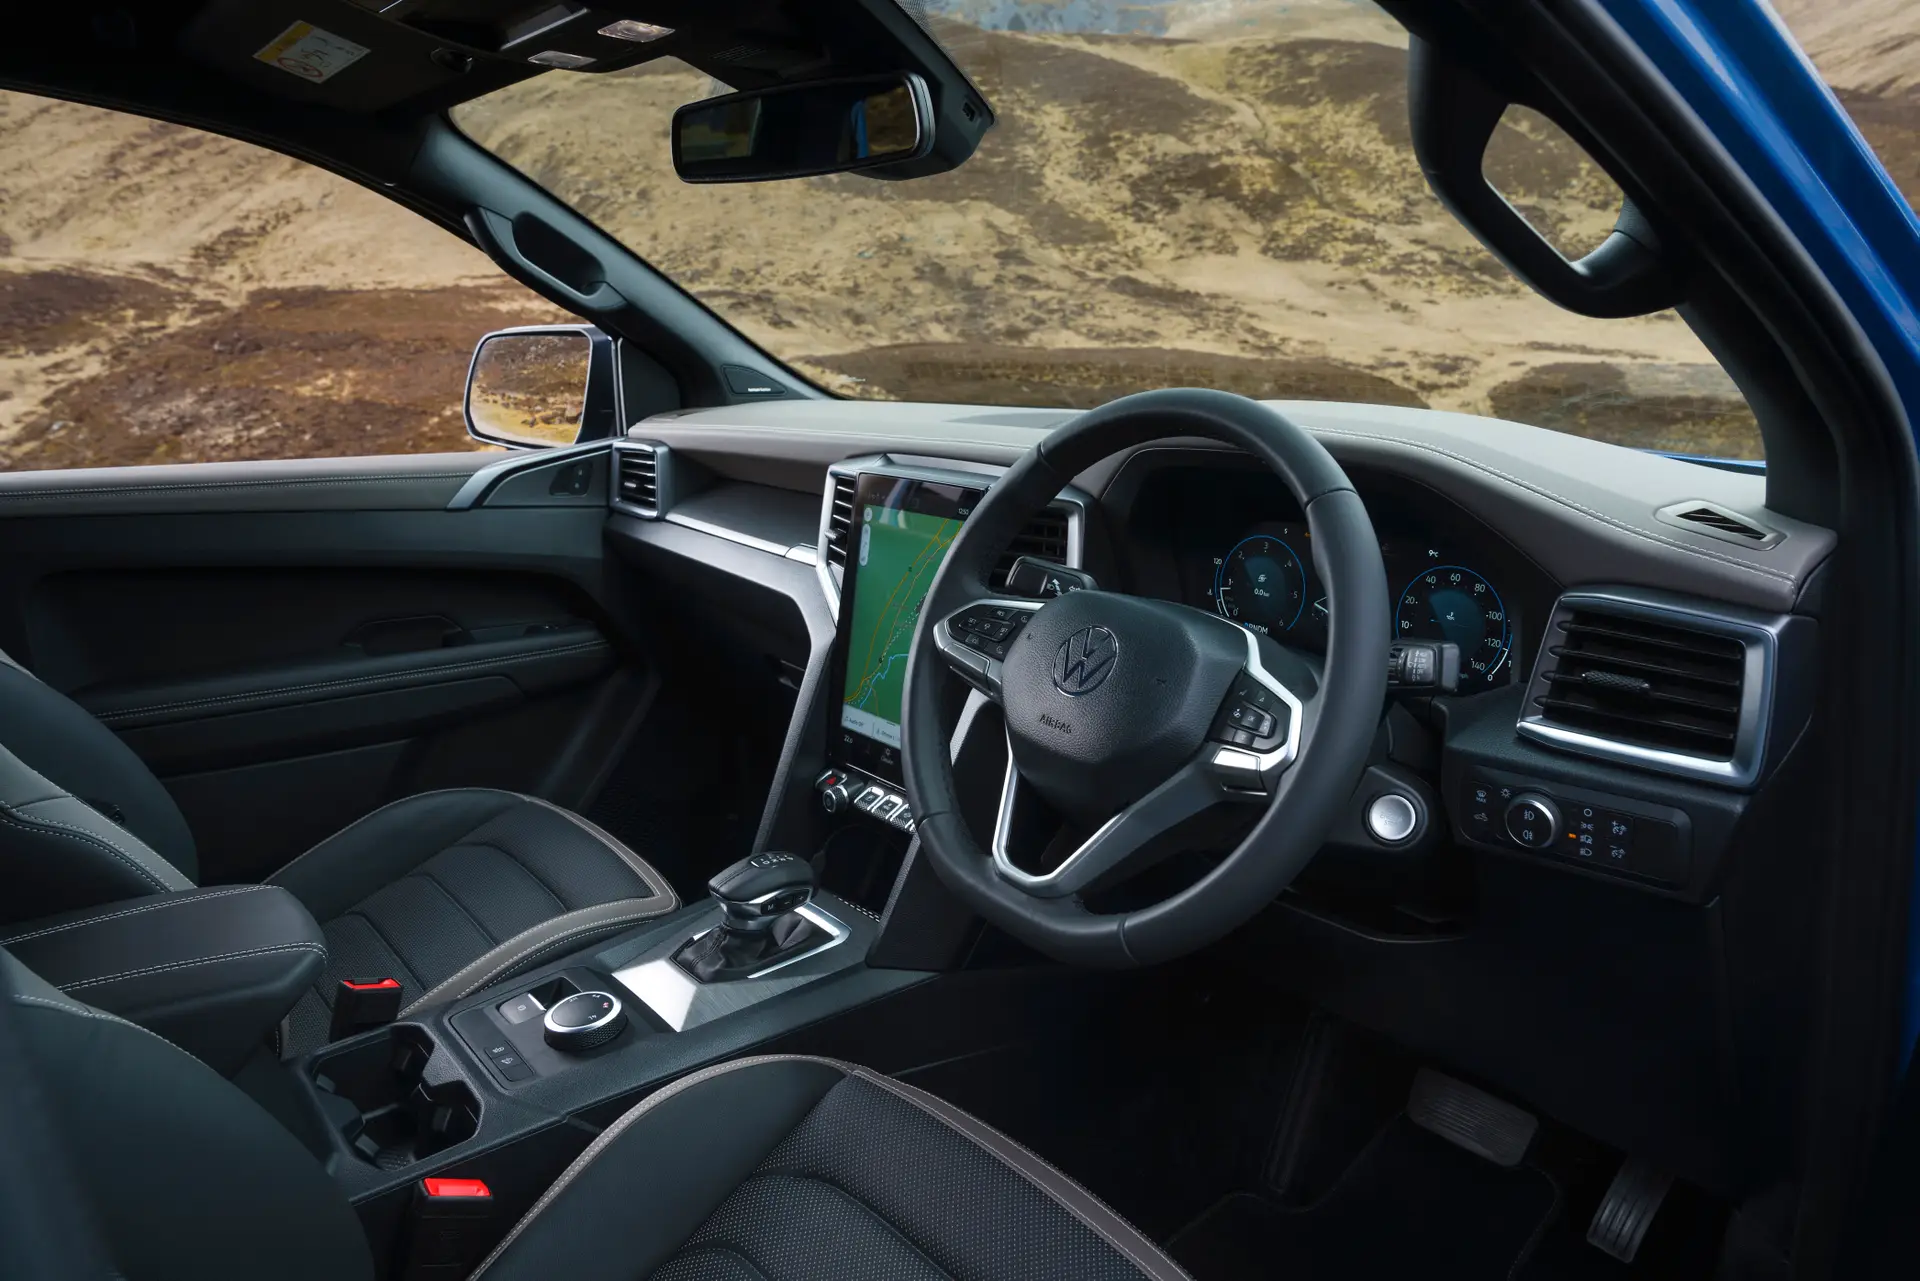 Volkswagen Amarok Review: interior